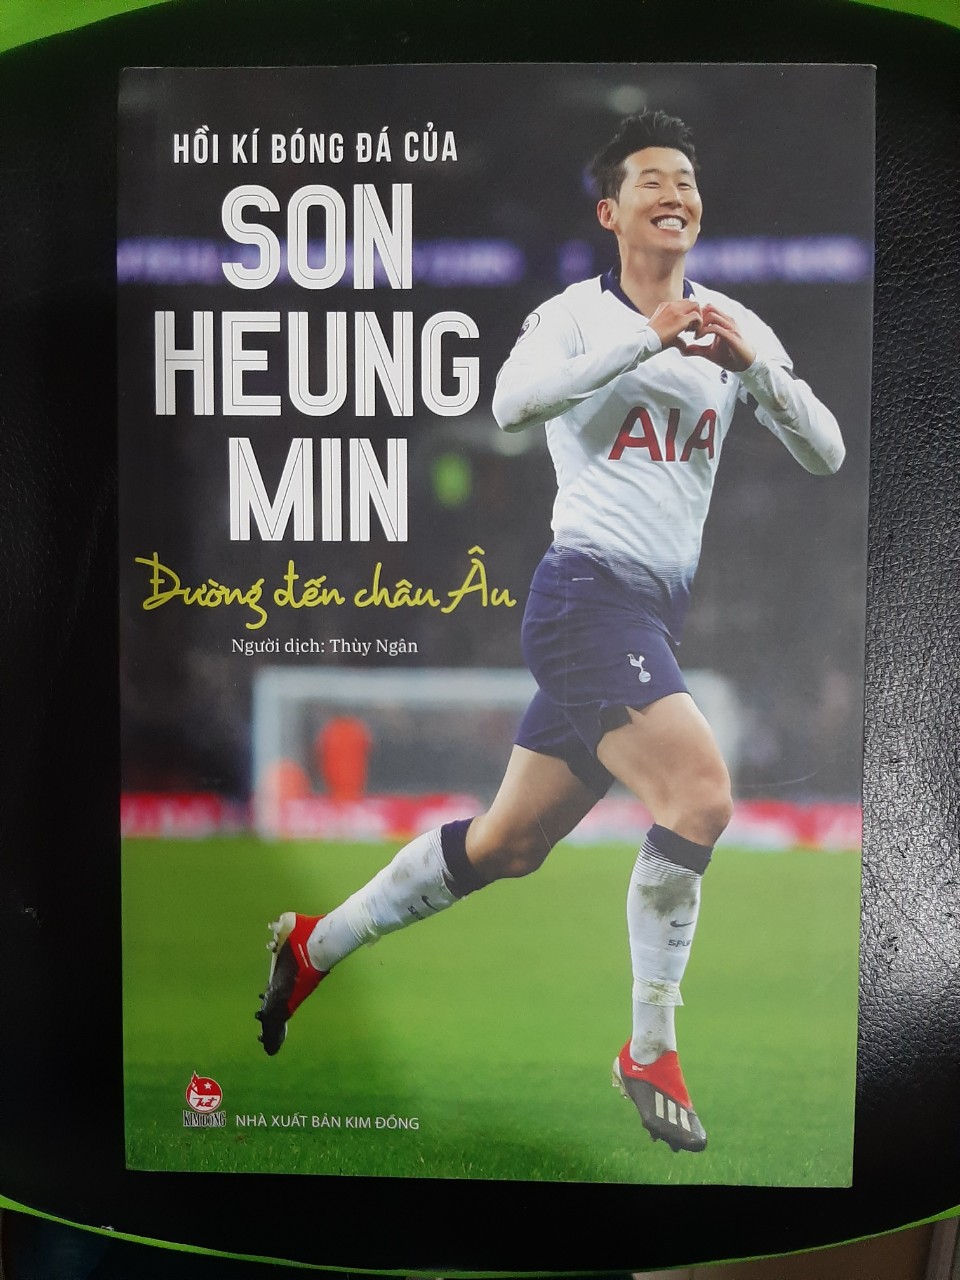 Hình ảnh Hồi kí bóng đá của Son Heung Min